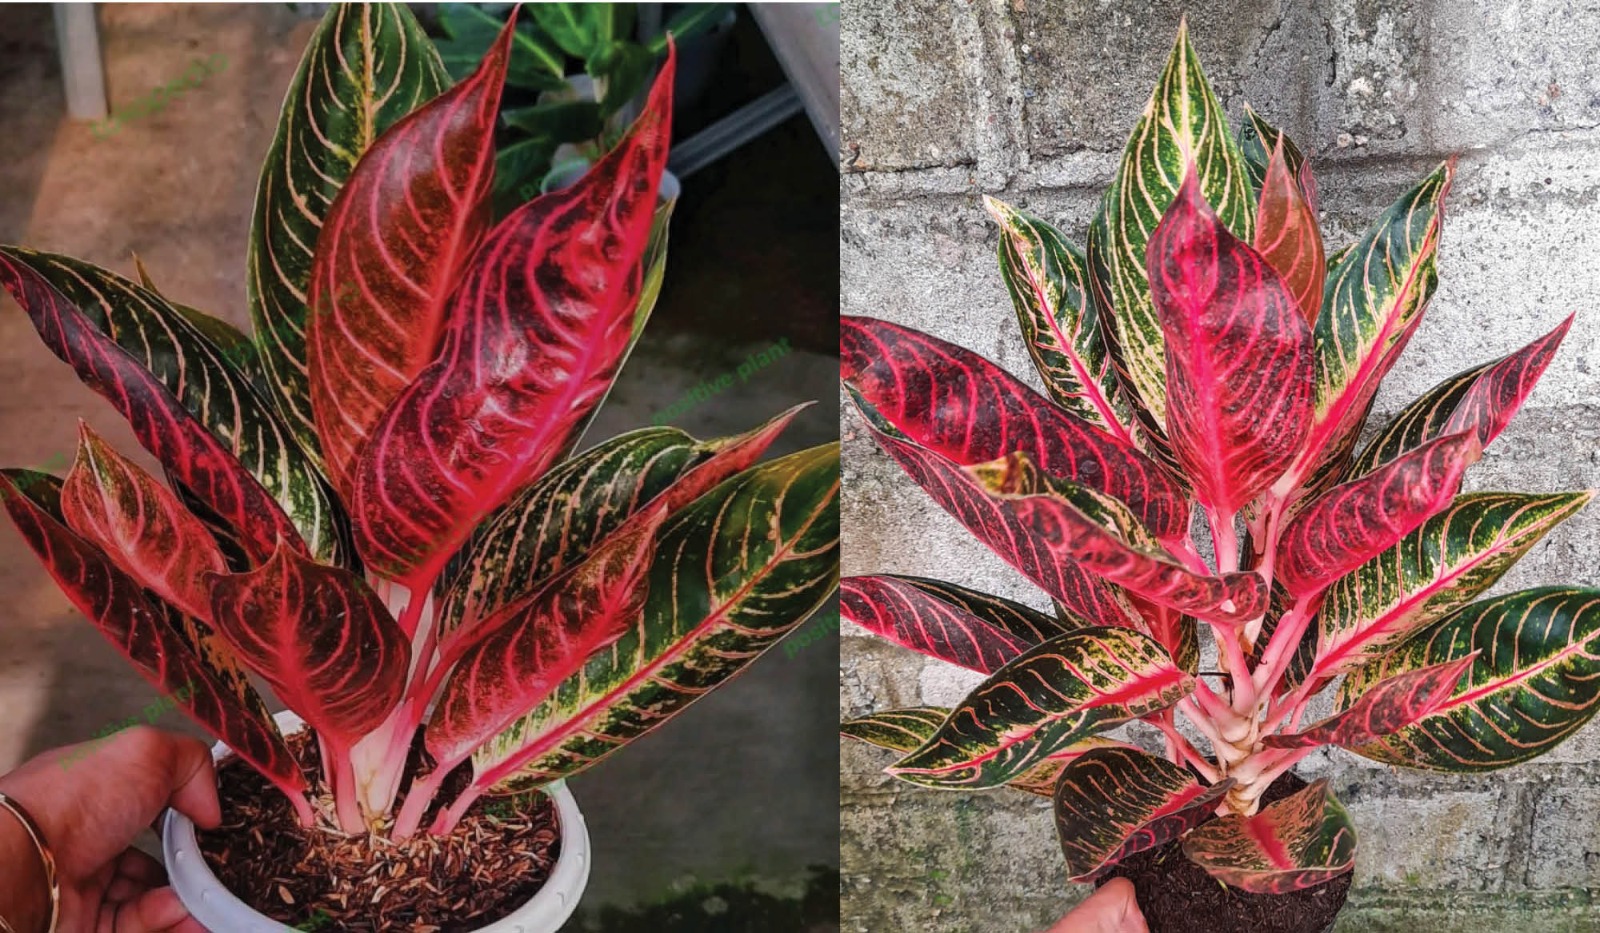 Pesona Eksotis Aglonema Sumatra, Tanaman Hias Paling Dicari dengan Kombinasi Warna yang Mengagumkan